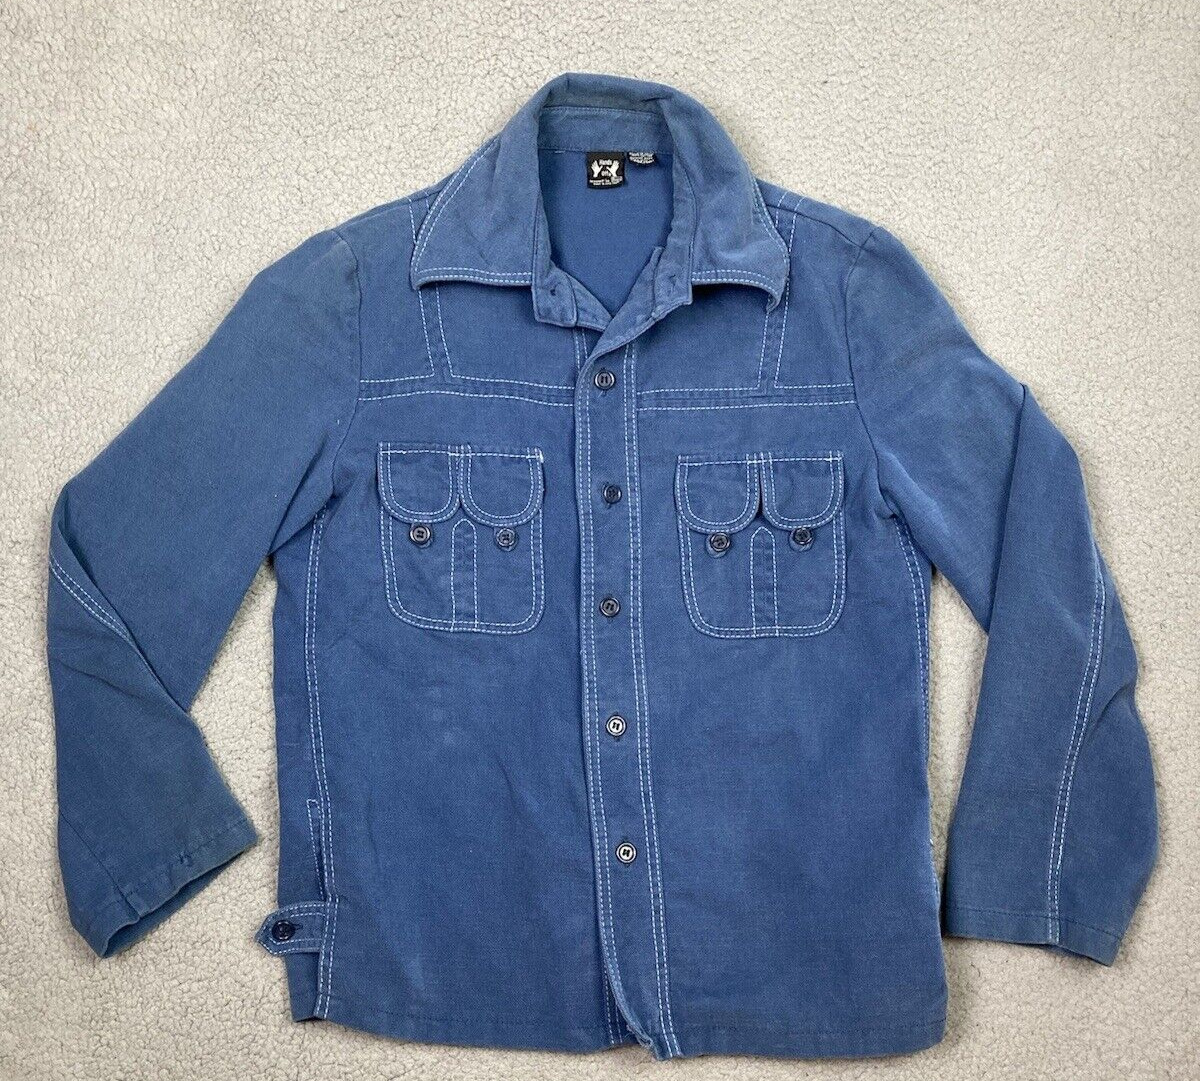 Vintage Hands Off Sears Shirt Jacket Mens Medium Blue Pockets Shacket 70s